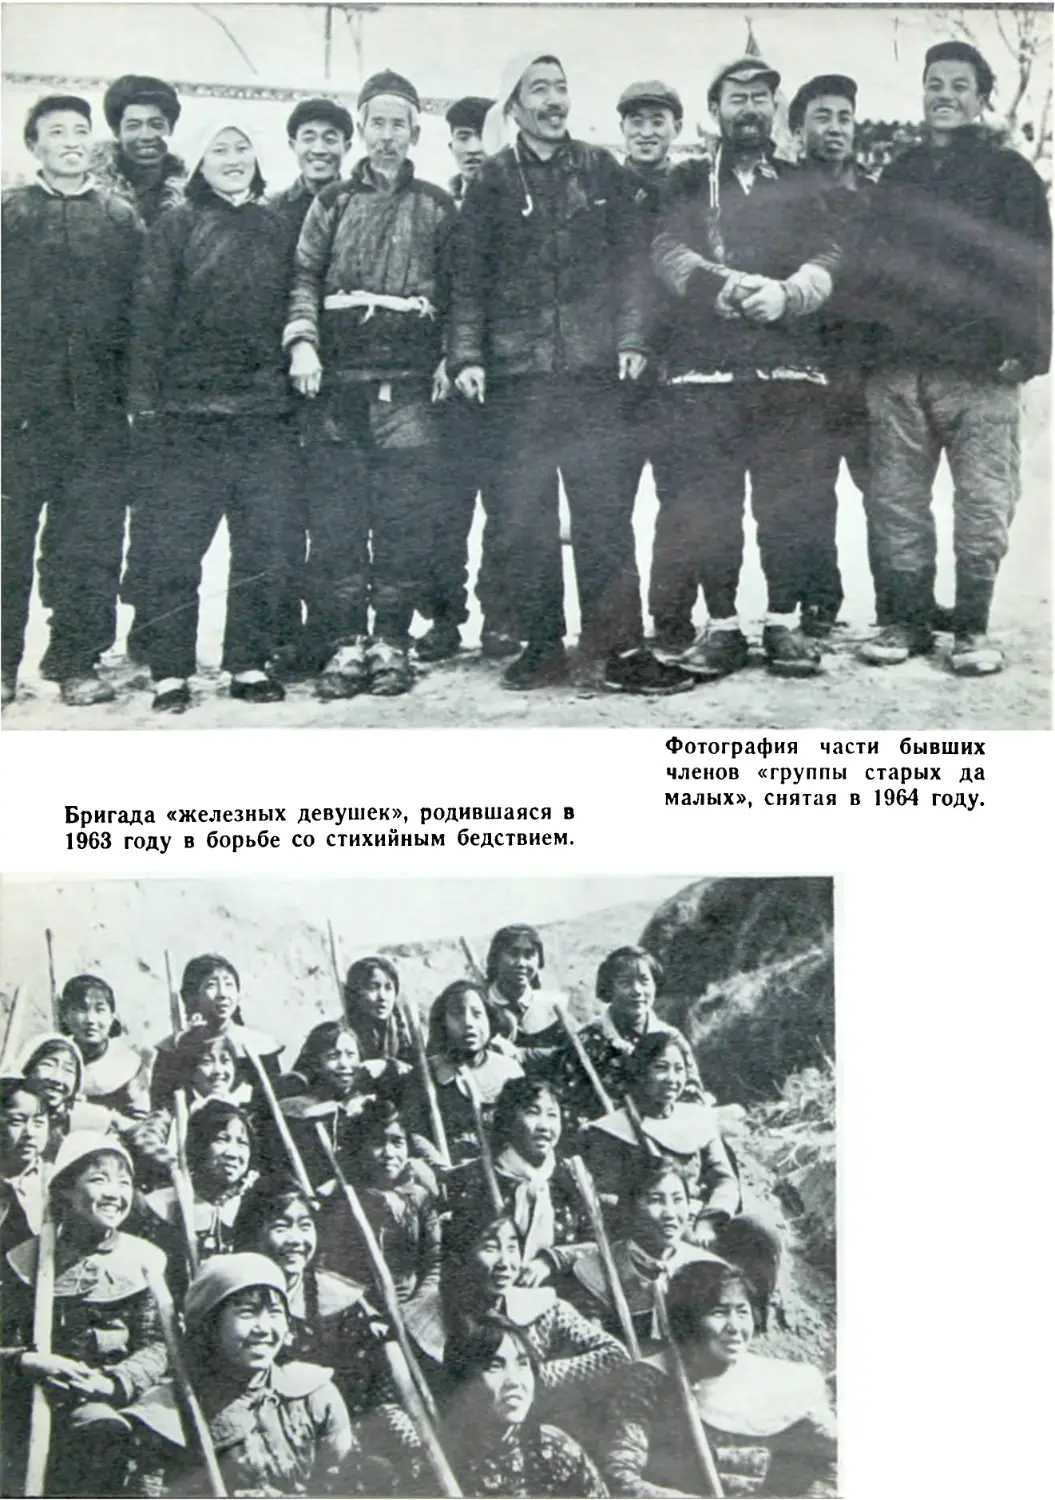 Фотография части бывших членов «группы старых да малых», снятая в 1964 году
Бригада «железных девушек», родившаяся в 1963 году в борьбе со стихийным бедствием